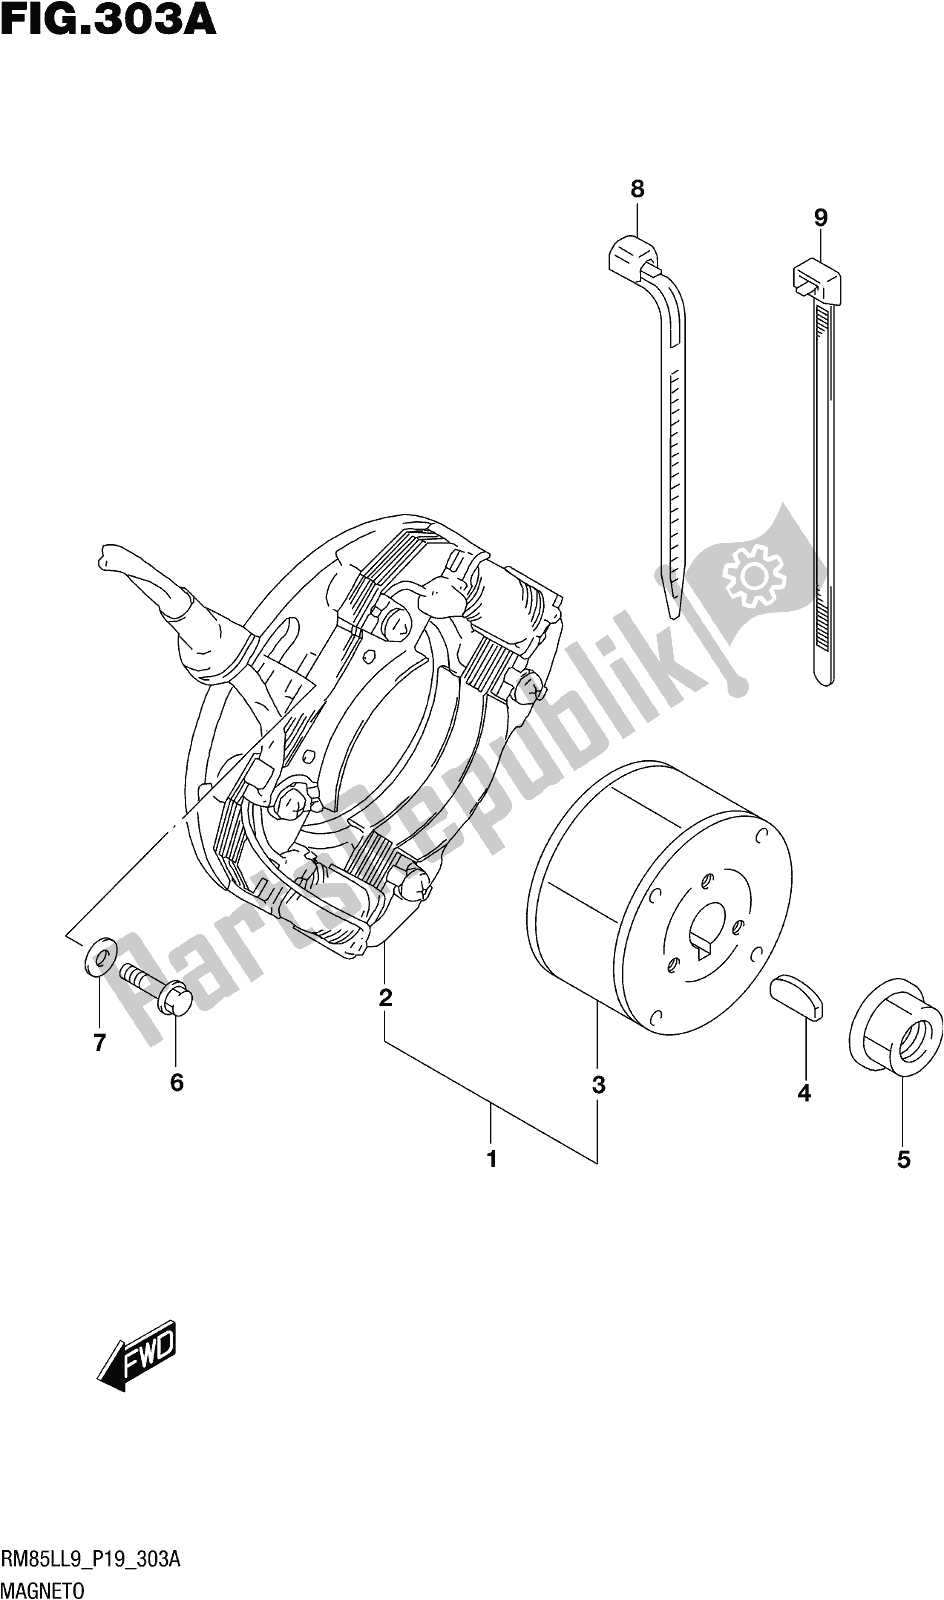 Alle onderdelen voor de Fig. 303a Magneto van de Suzuki RM 85L 2019